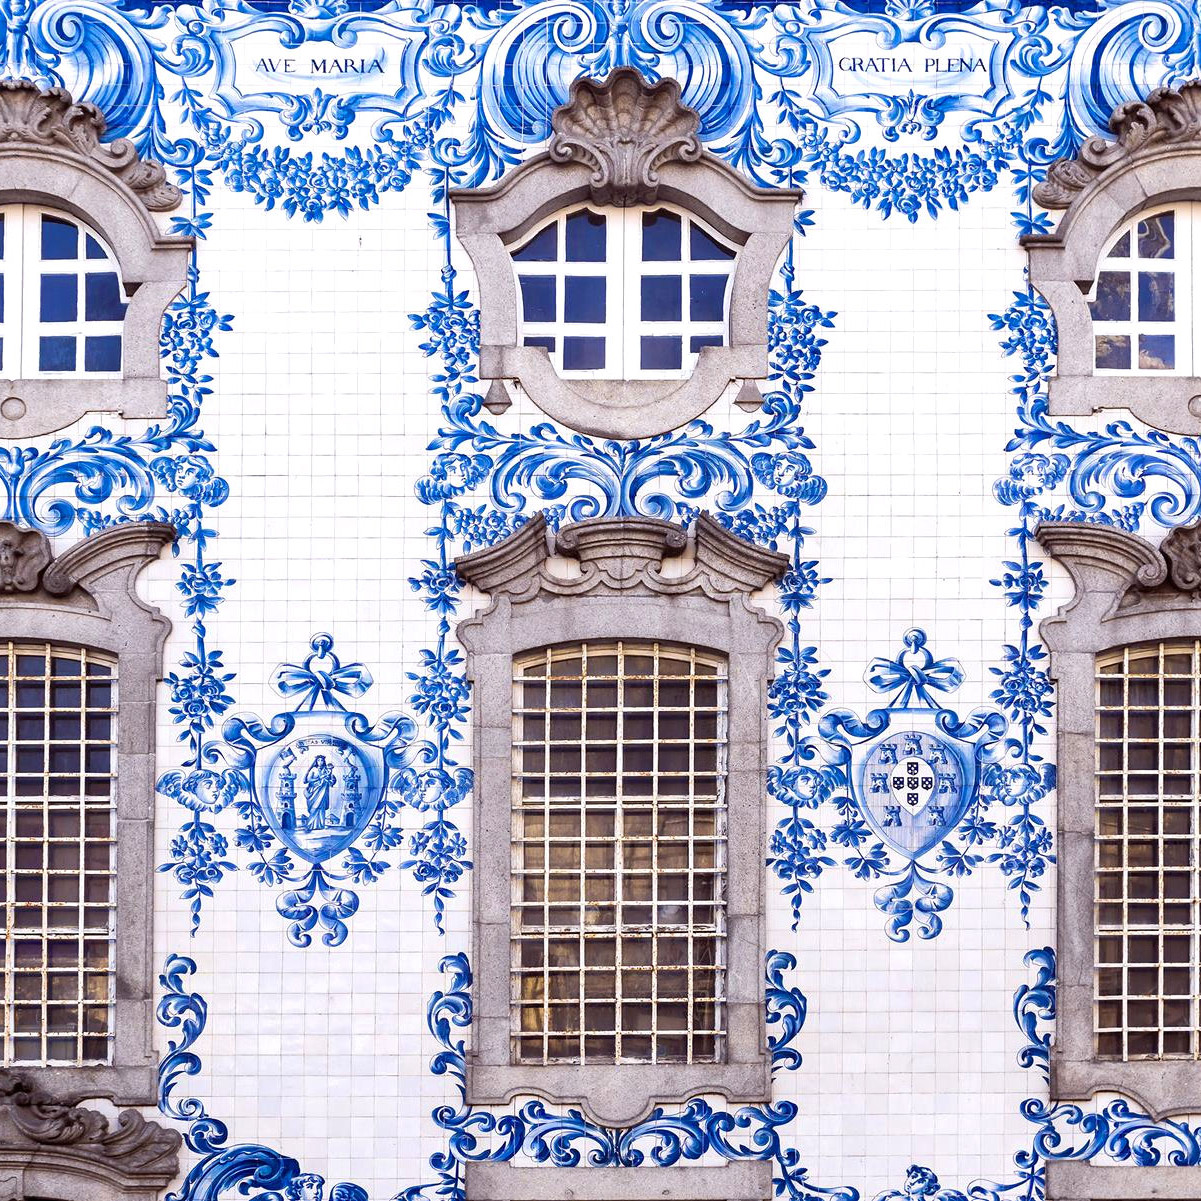 Porto tiles